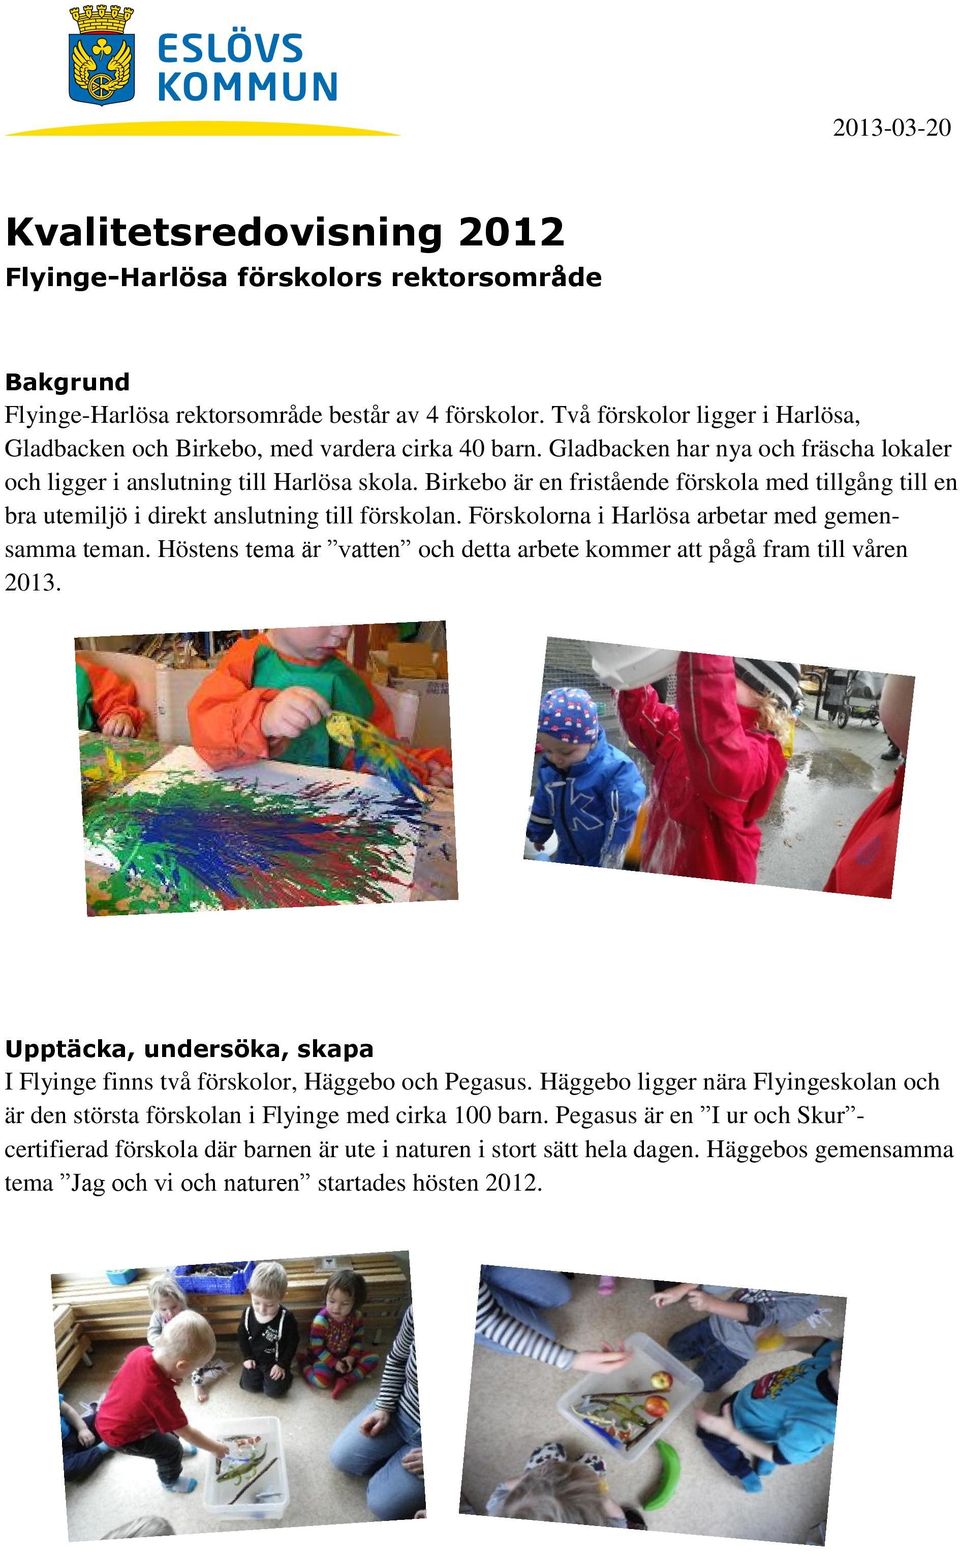 Birkebo är en fristående förskola med tillgång till en bra utemiljö i direkt anslutning till förskolan. Förskolorna i Harlösa arbetar med gemensamma teman.